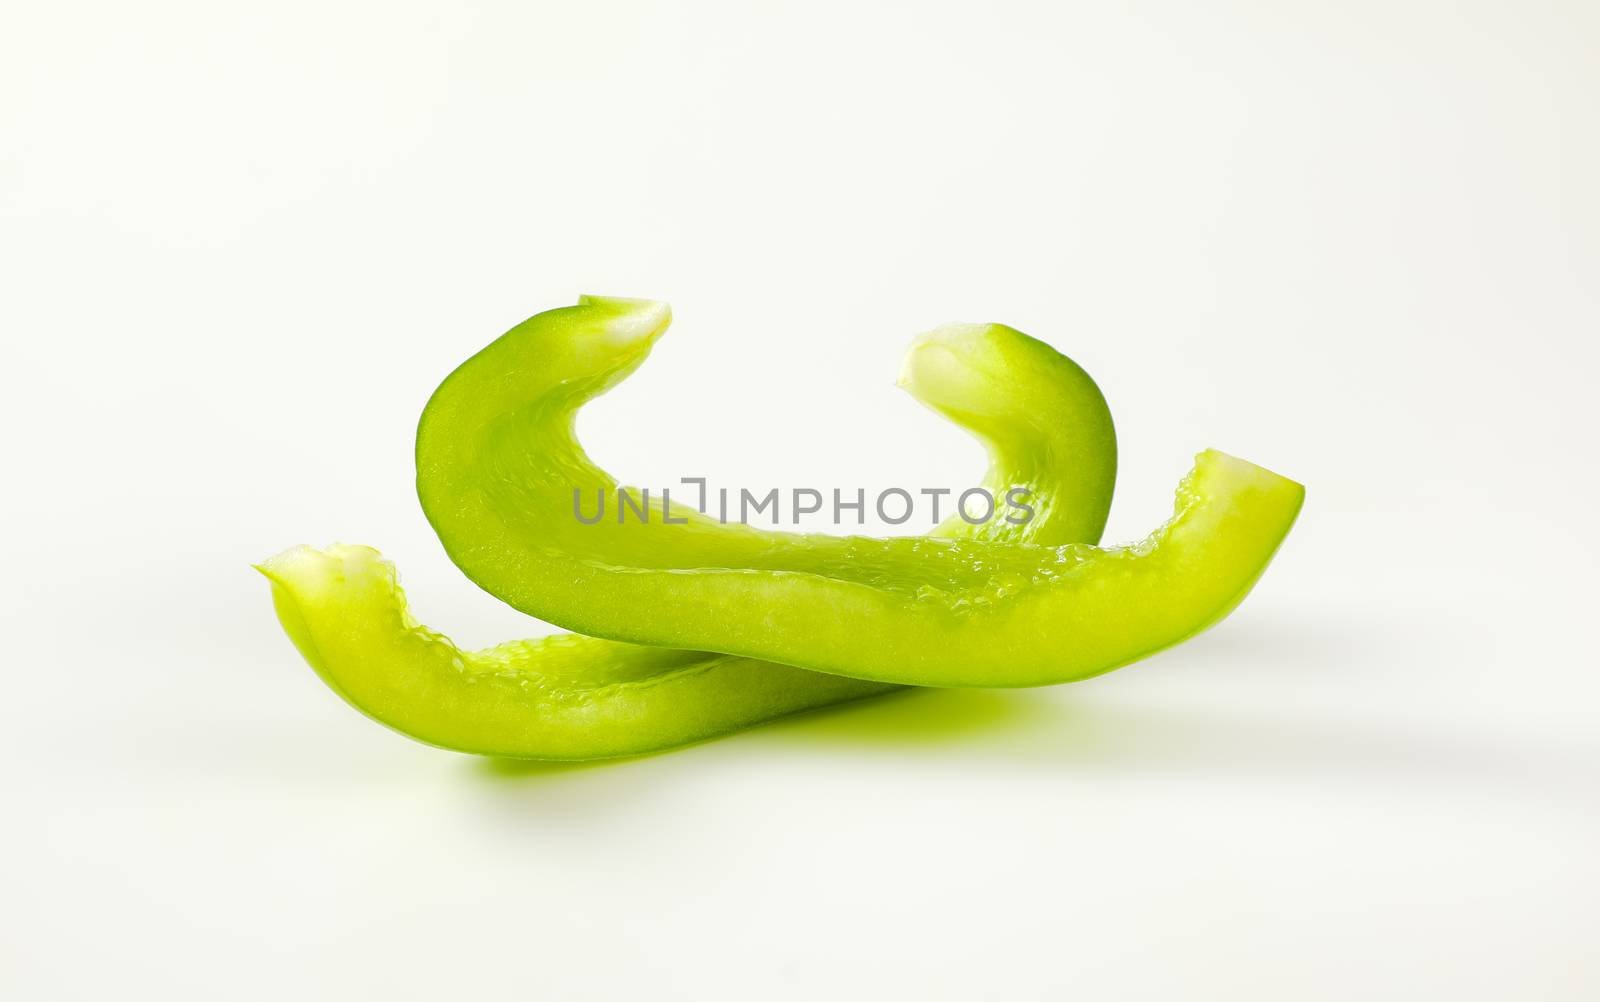 Slices of fresh green bell pepper